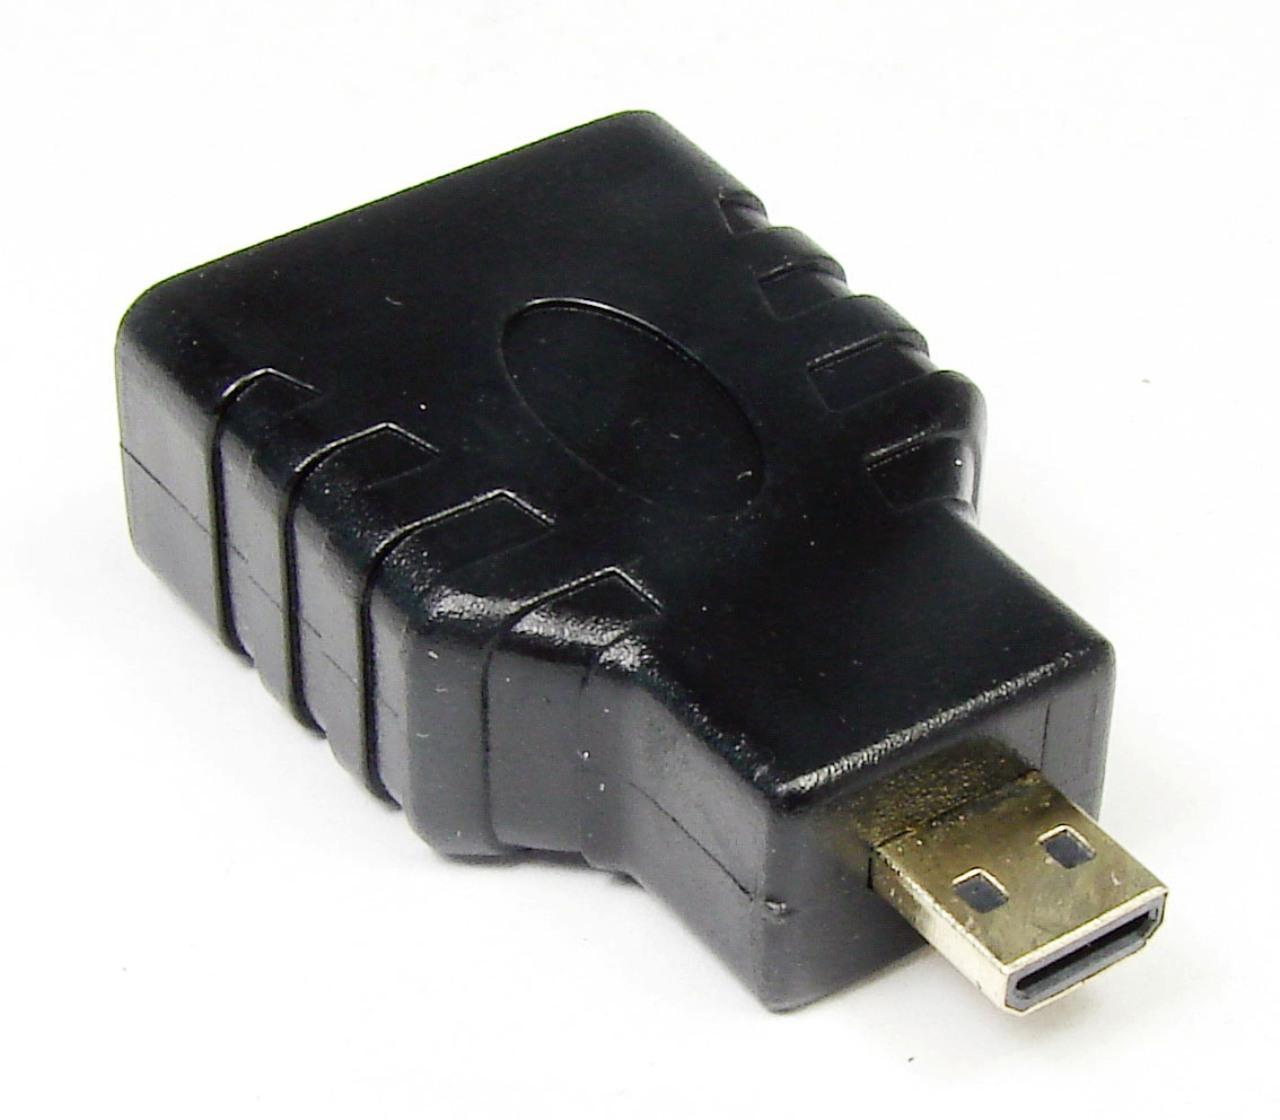  MicroHDMI - HDMI SmartBuy (A-116)